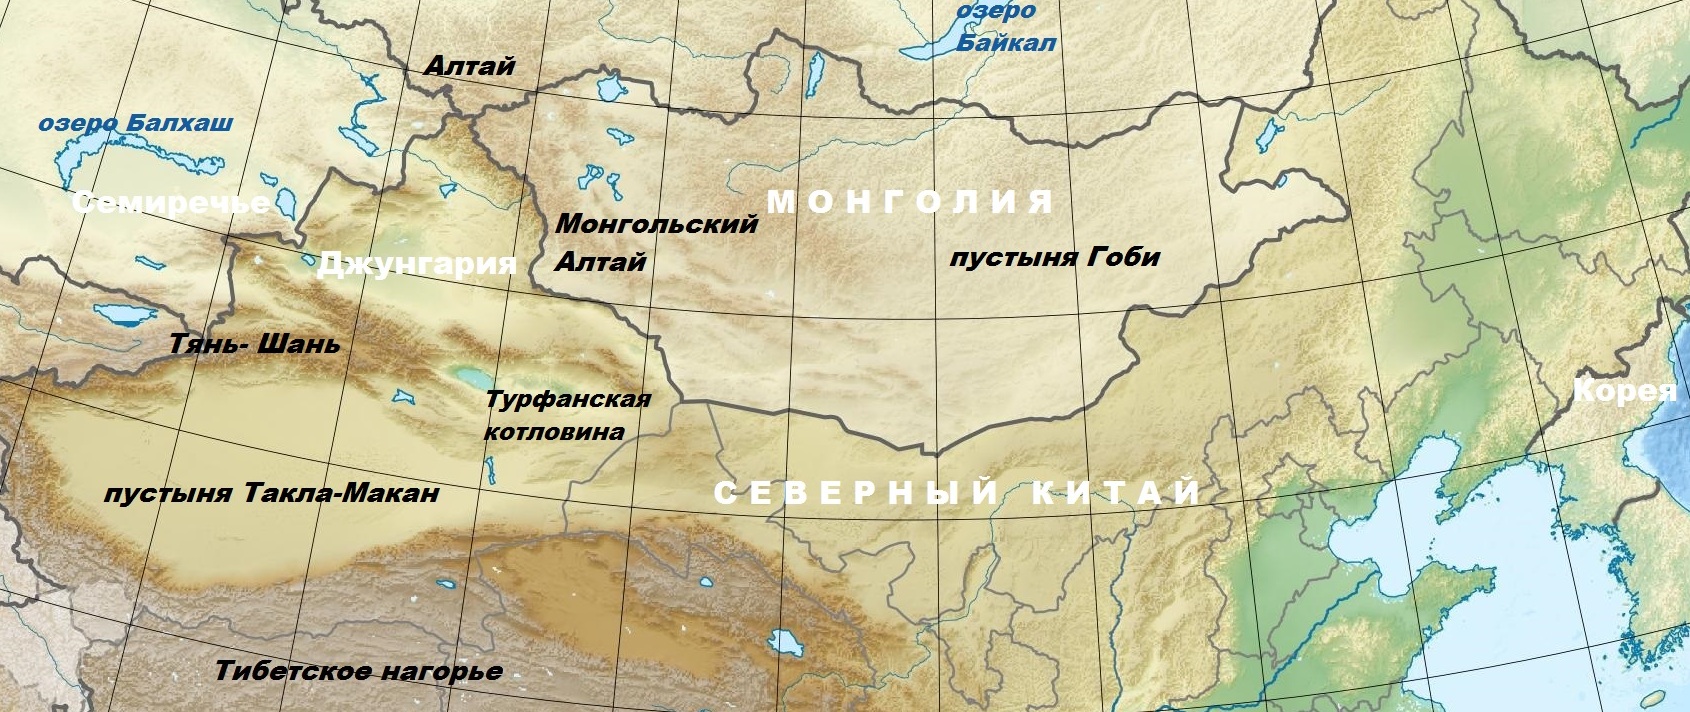 Центральная Азия. Область предположительной прародины тюркских племён